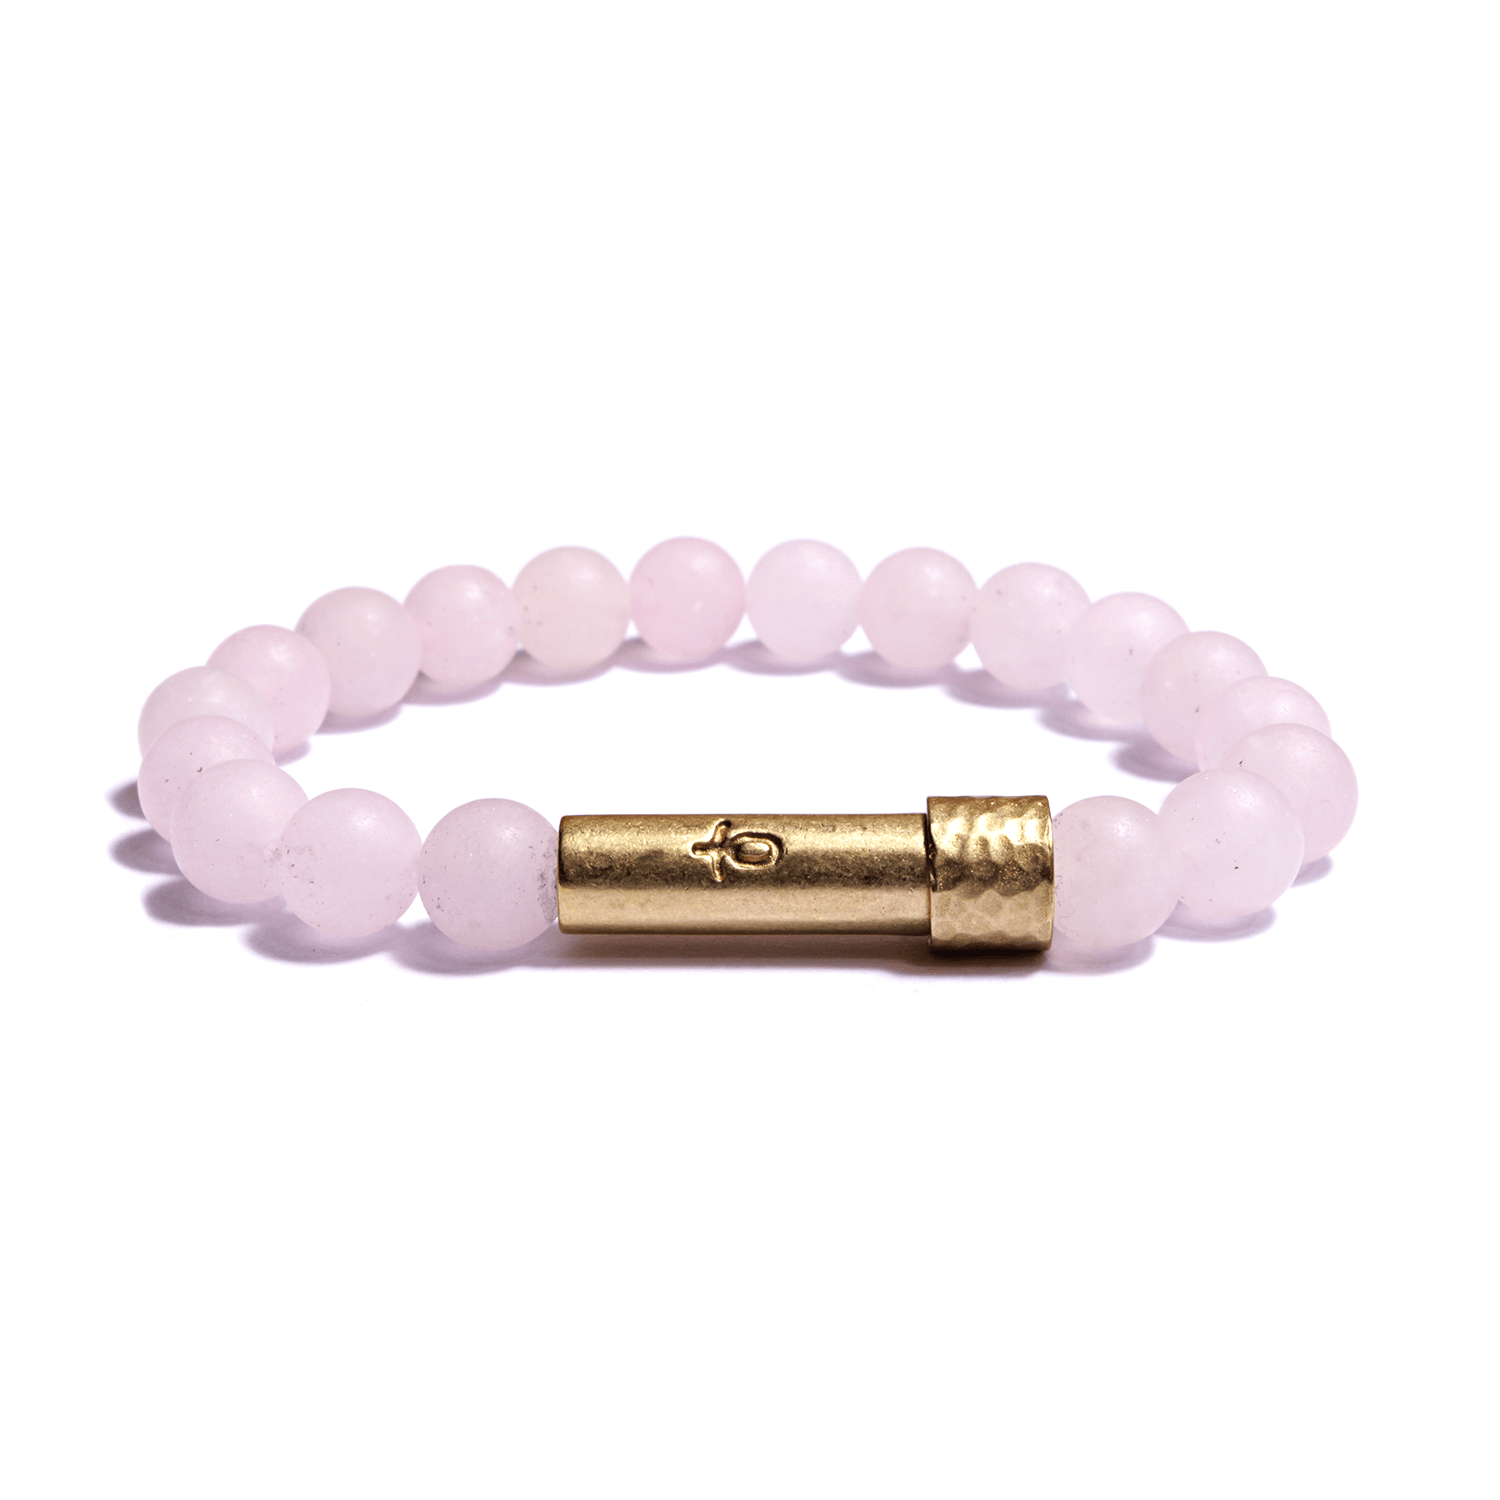 Rose Quartz bubble gum little girls bracelet 13cm handmade